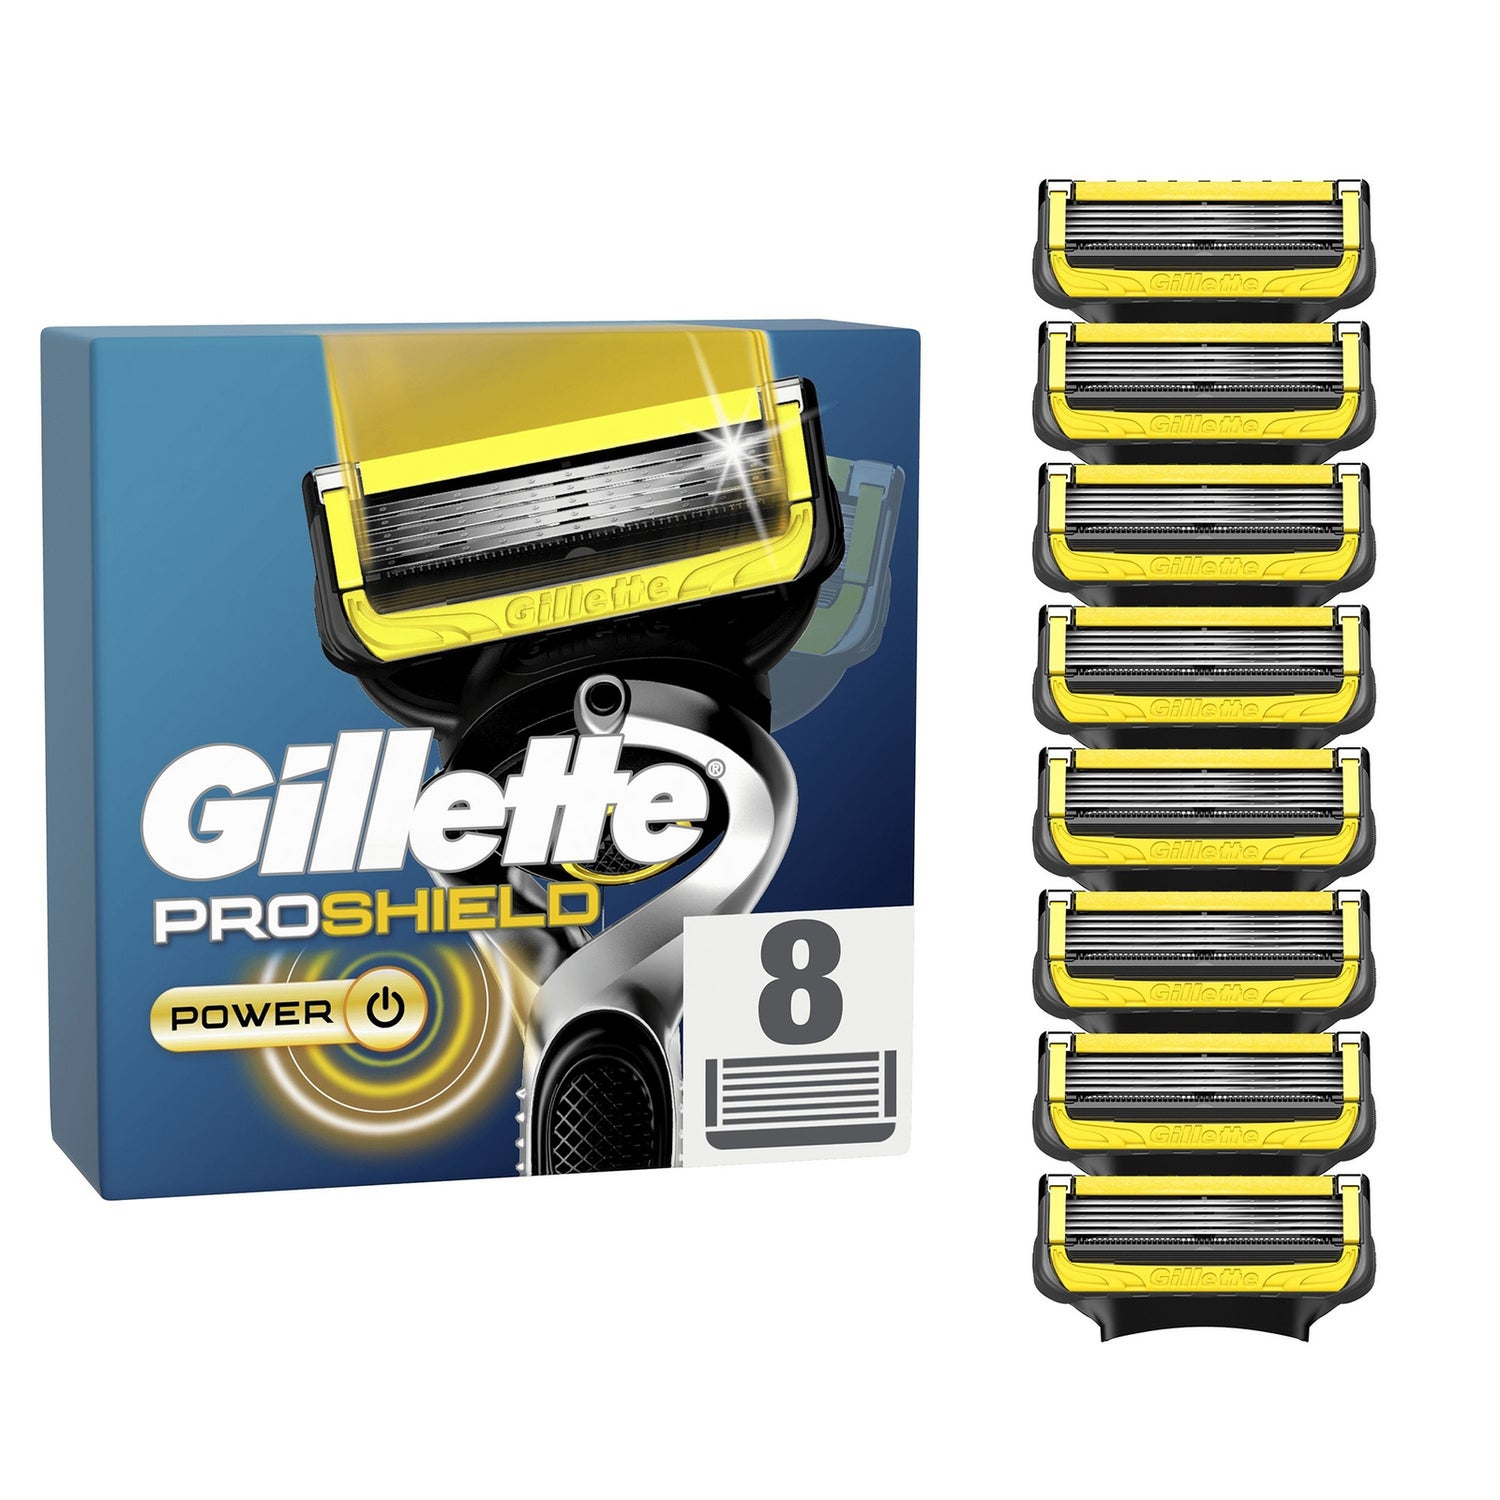 Gillette ProShield Power Razor Blades